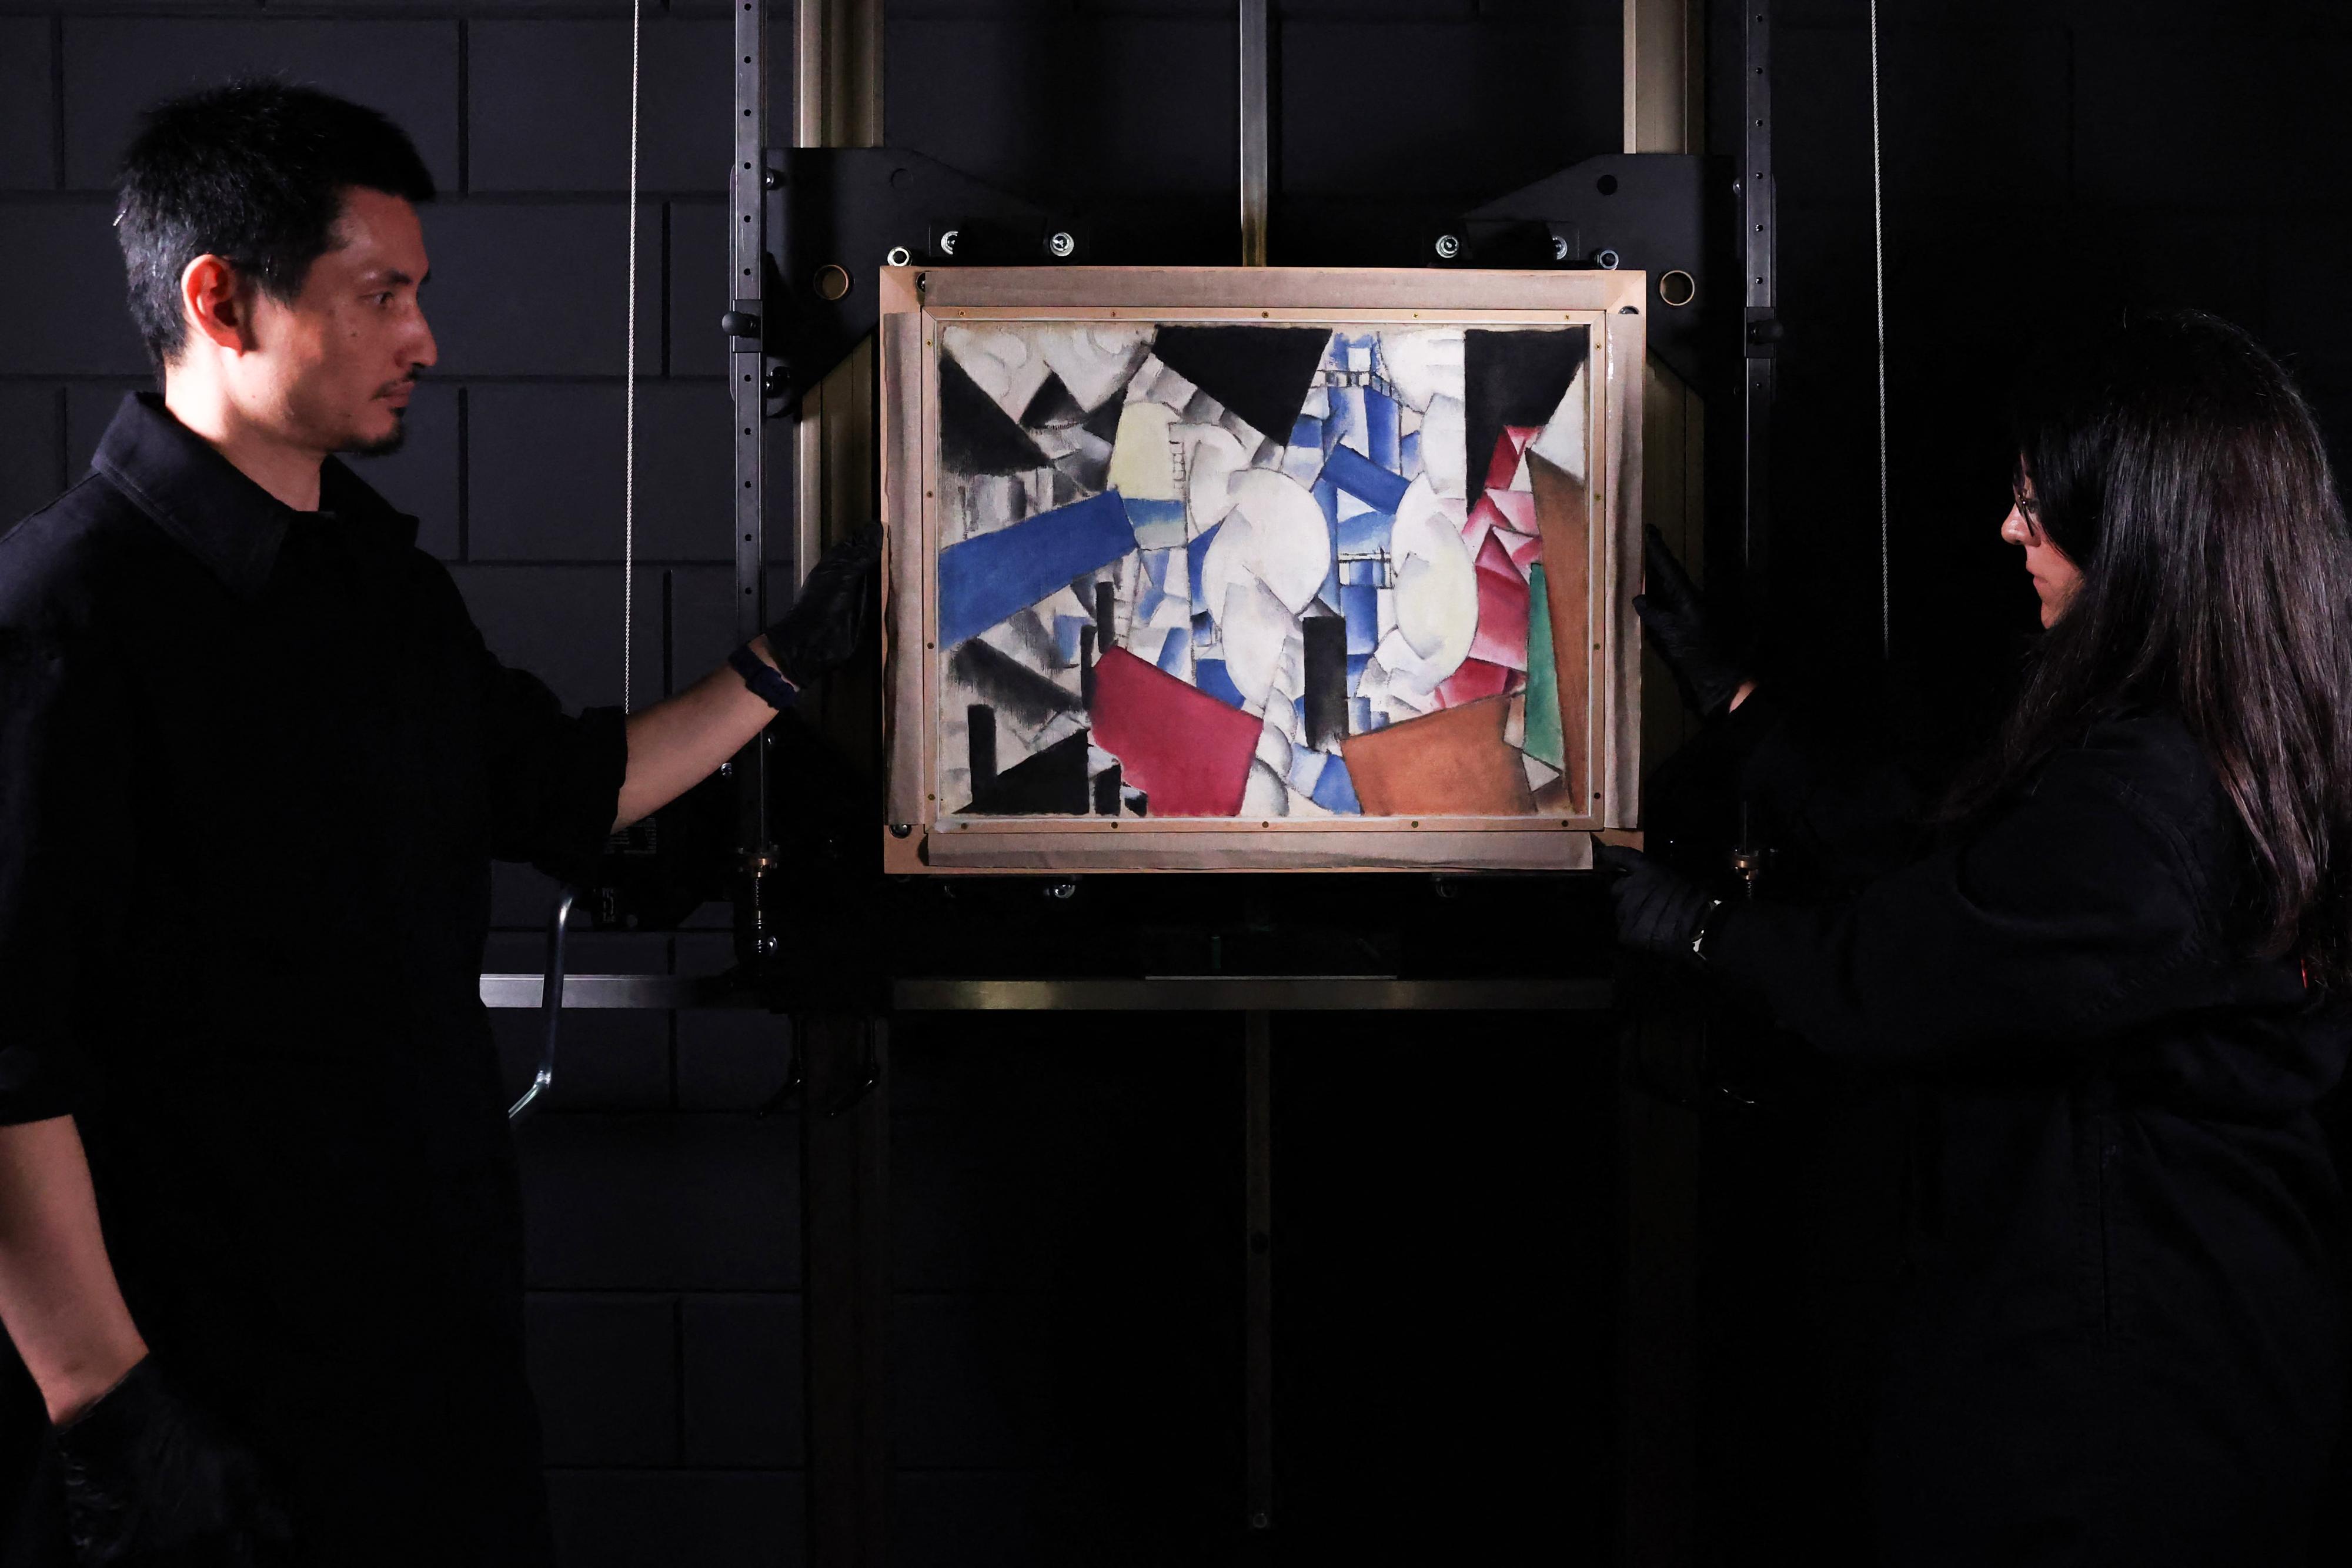 Des experts en art dévoilent la toile de Fernand Léger "Fumée sur les toits" explosée au Studio Redivivus, situé à La Haye [AFP - FRANÇOIS WALSCHAERTS]